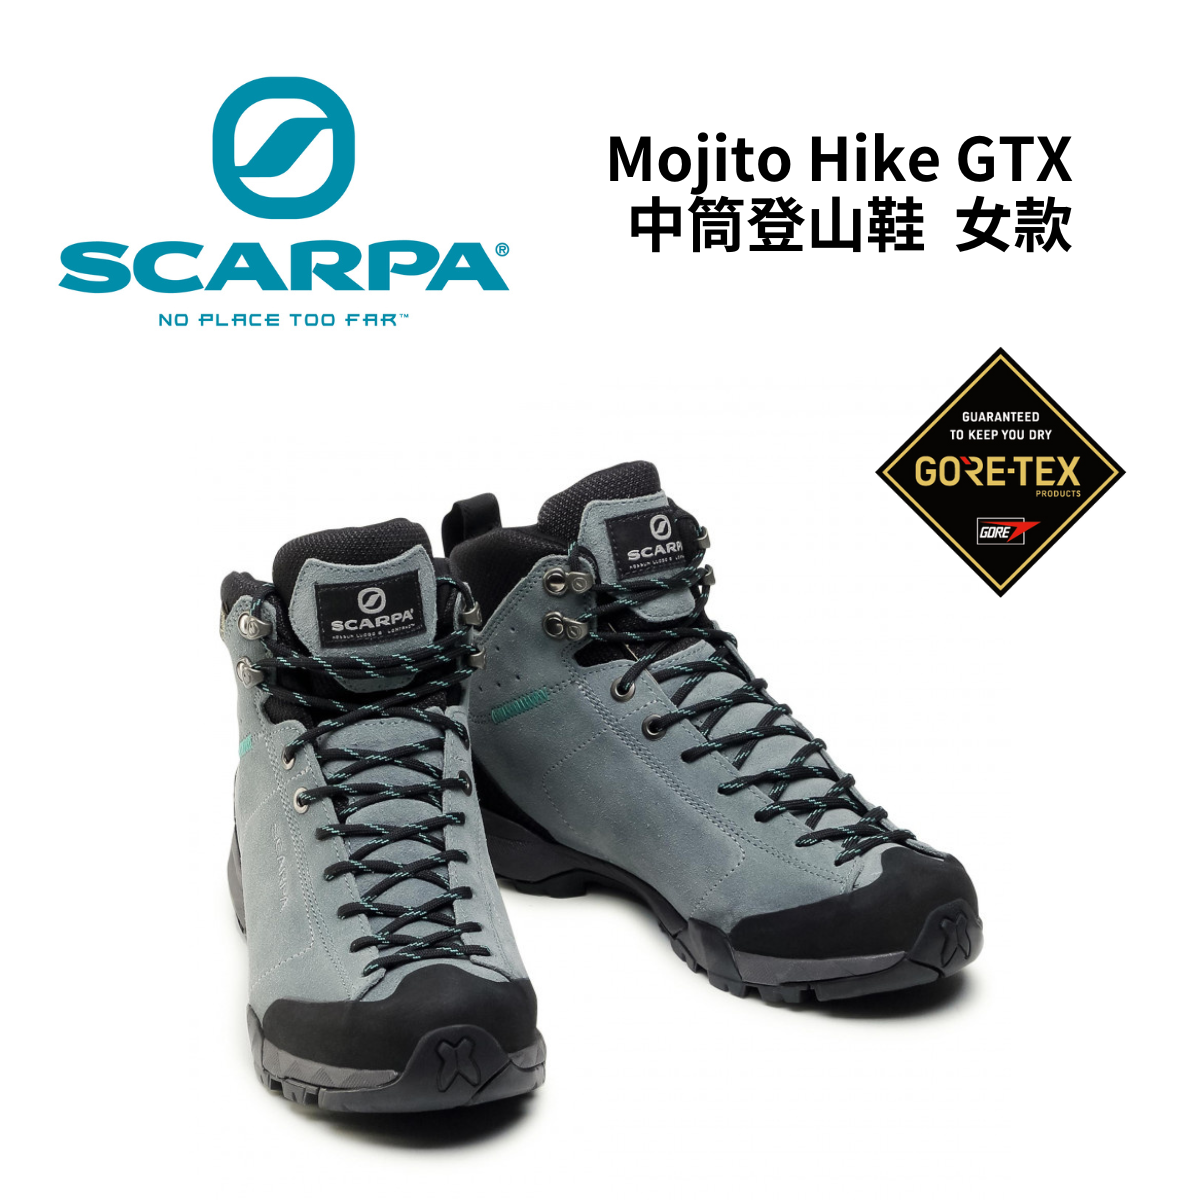 【Scarpa】MOJITO HIKE GTX 女款 中筒登山鞋 - 針葉樹/馬爾地夫